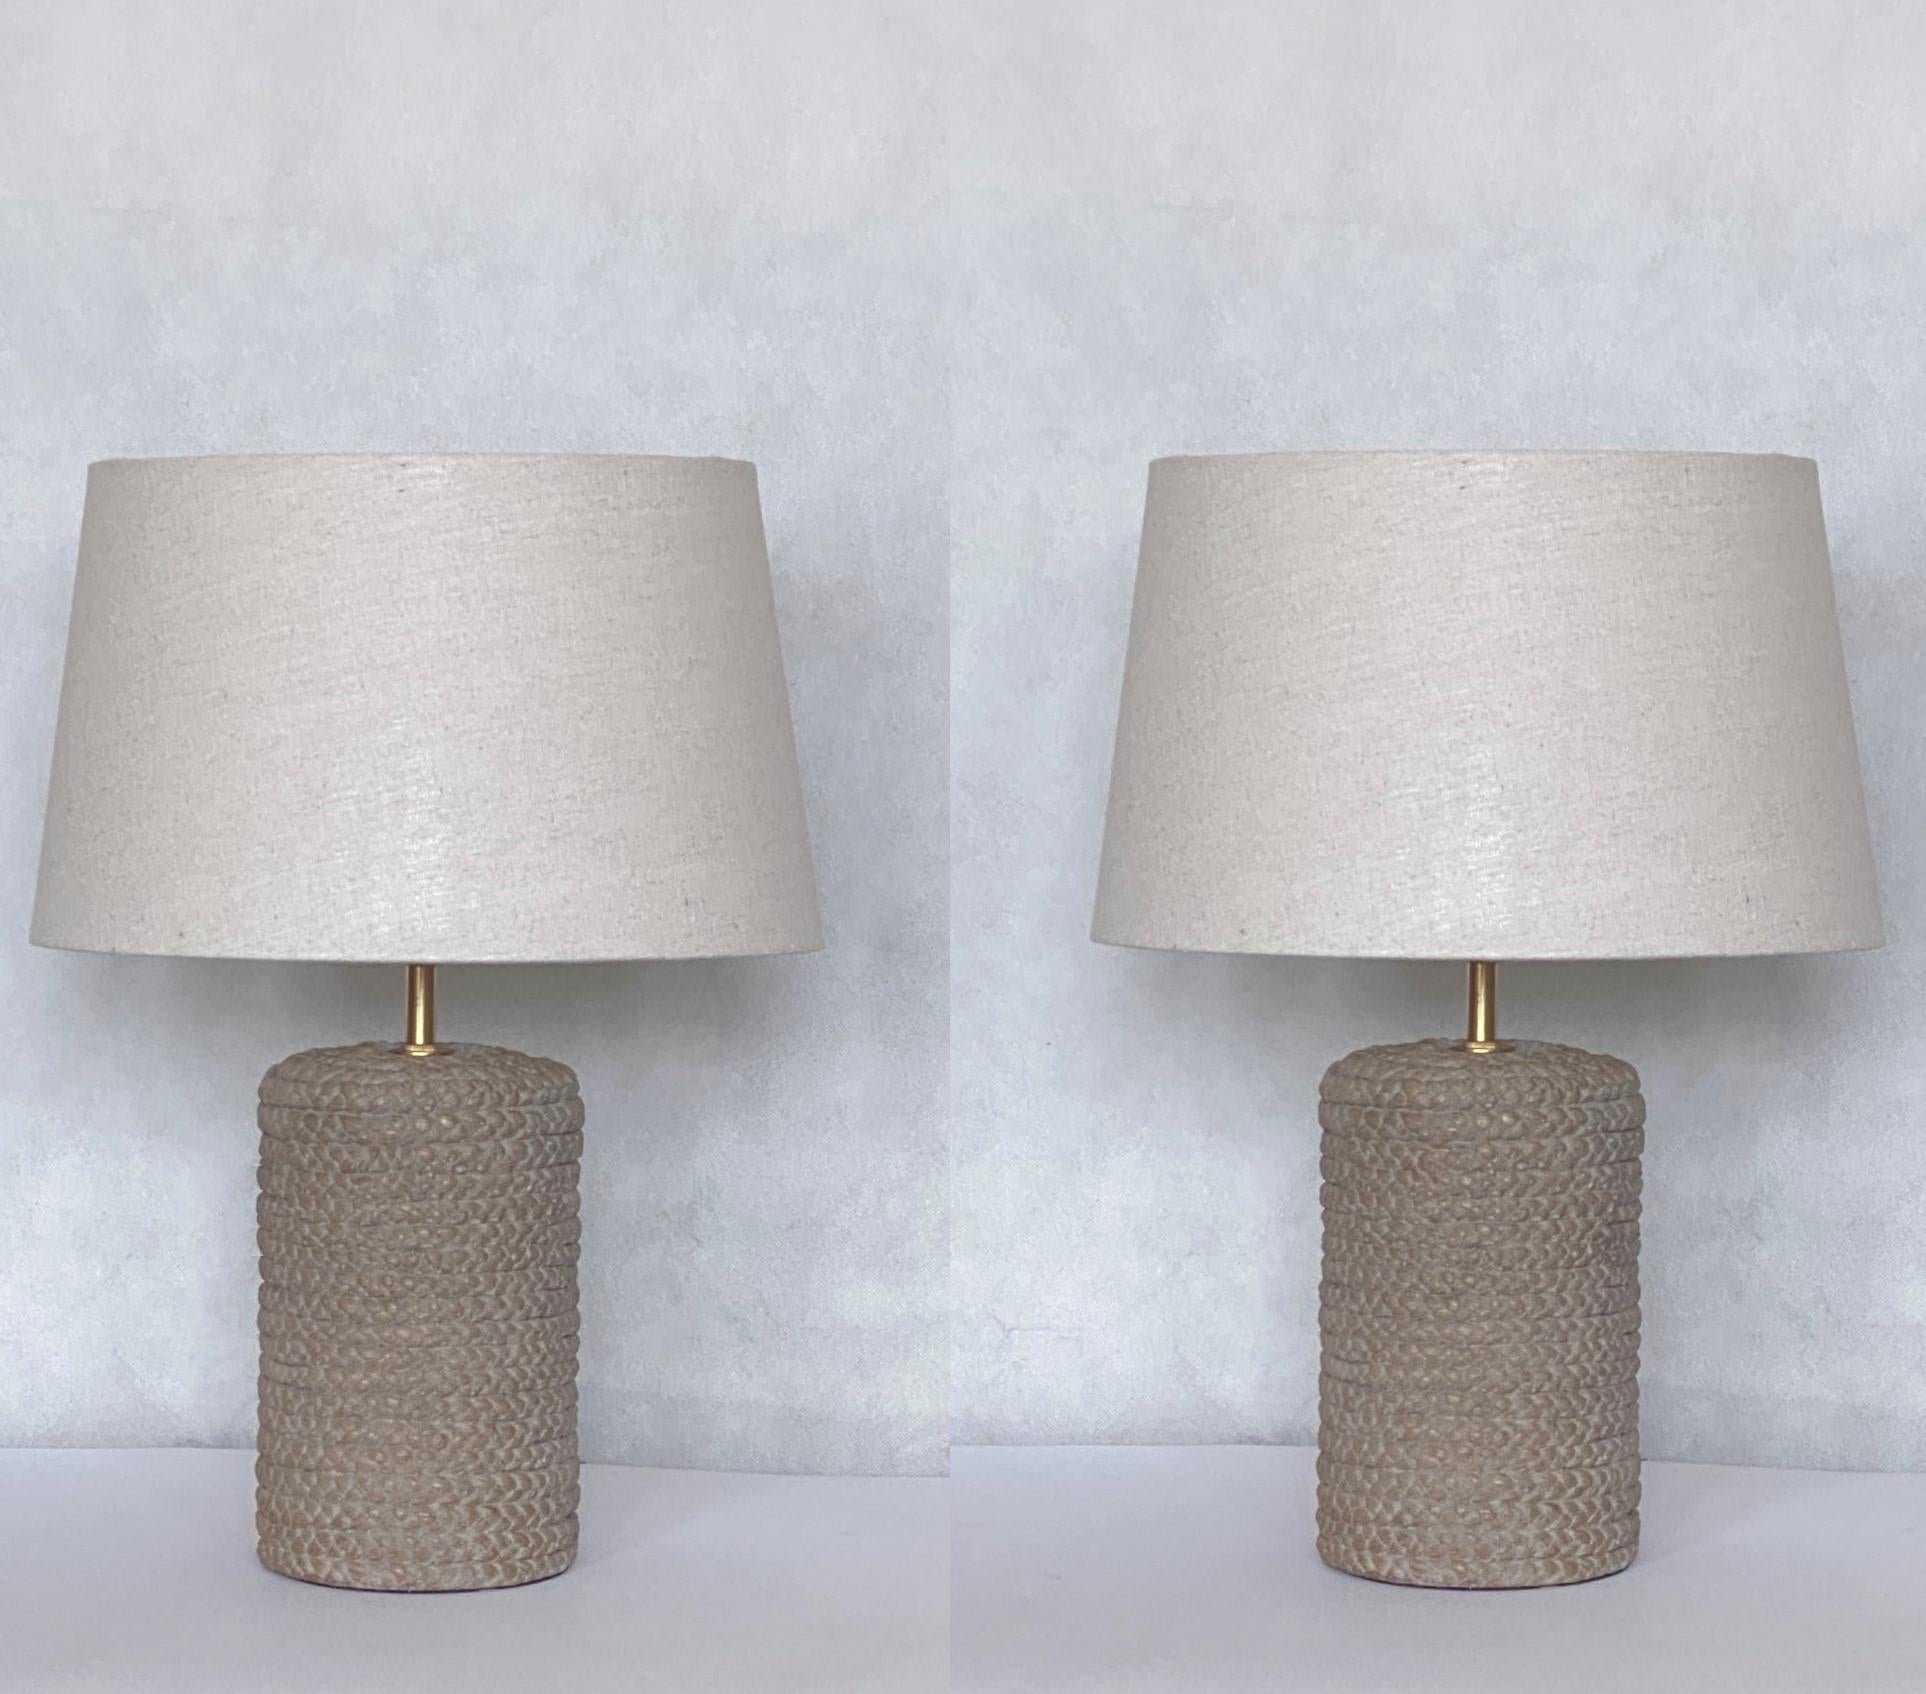 Une belle paire de lampes de table scandinaves en céramique des années 1960. Corps en céramique en forme de corde, avec des abat-jours ronds en lin. Les deux lampes sont en excellent état, pas de dommages, câblage refait, abat-jour neufs. Elle peut